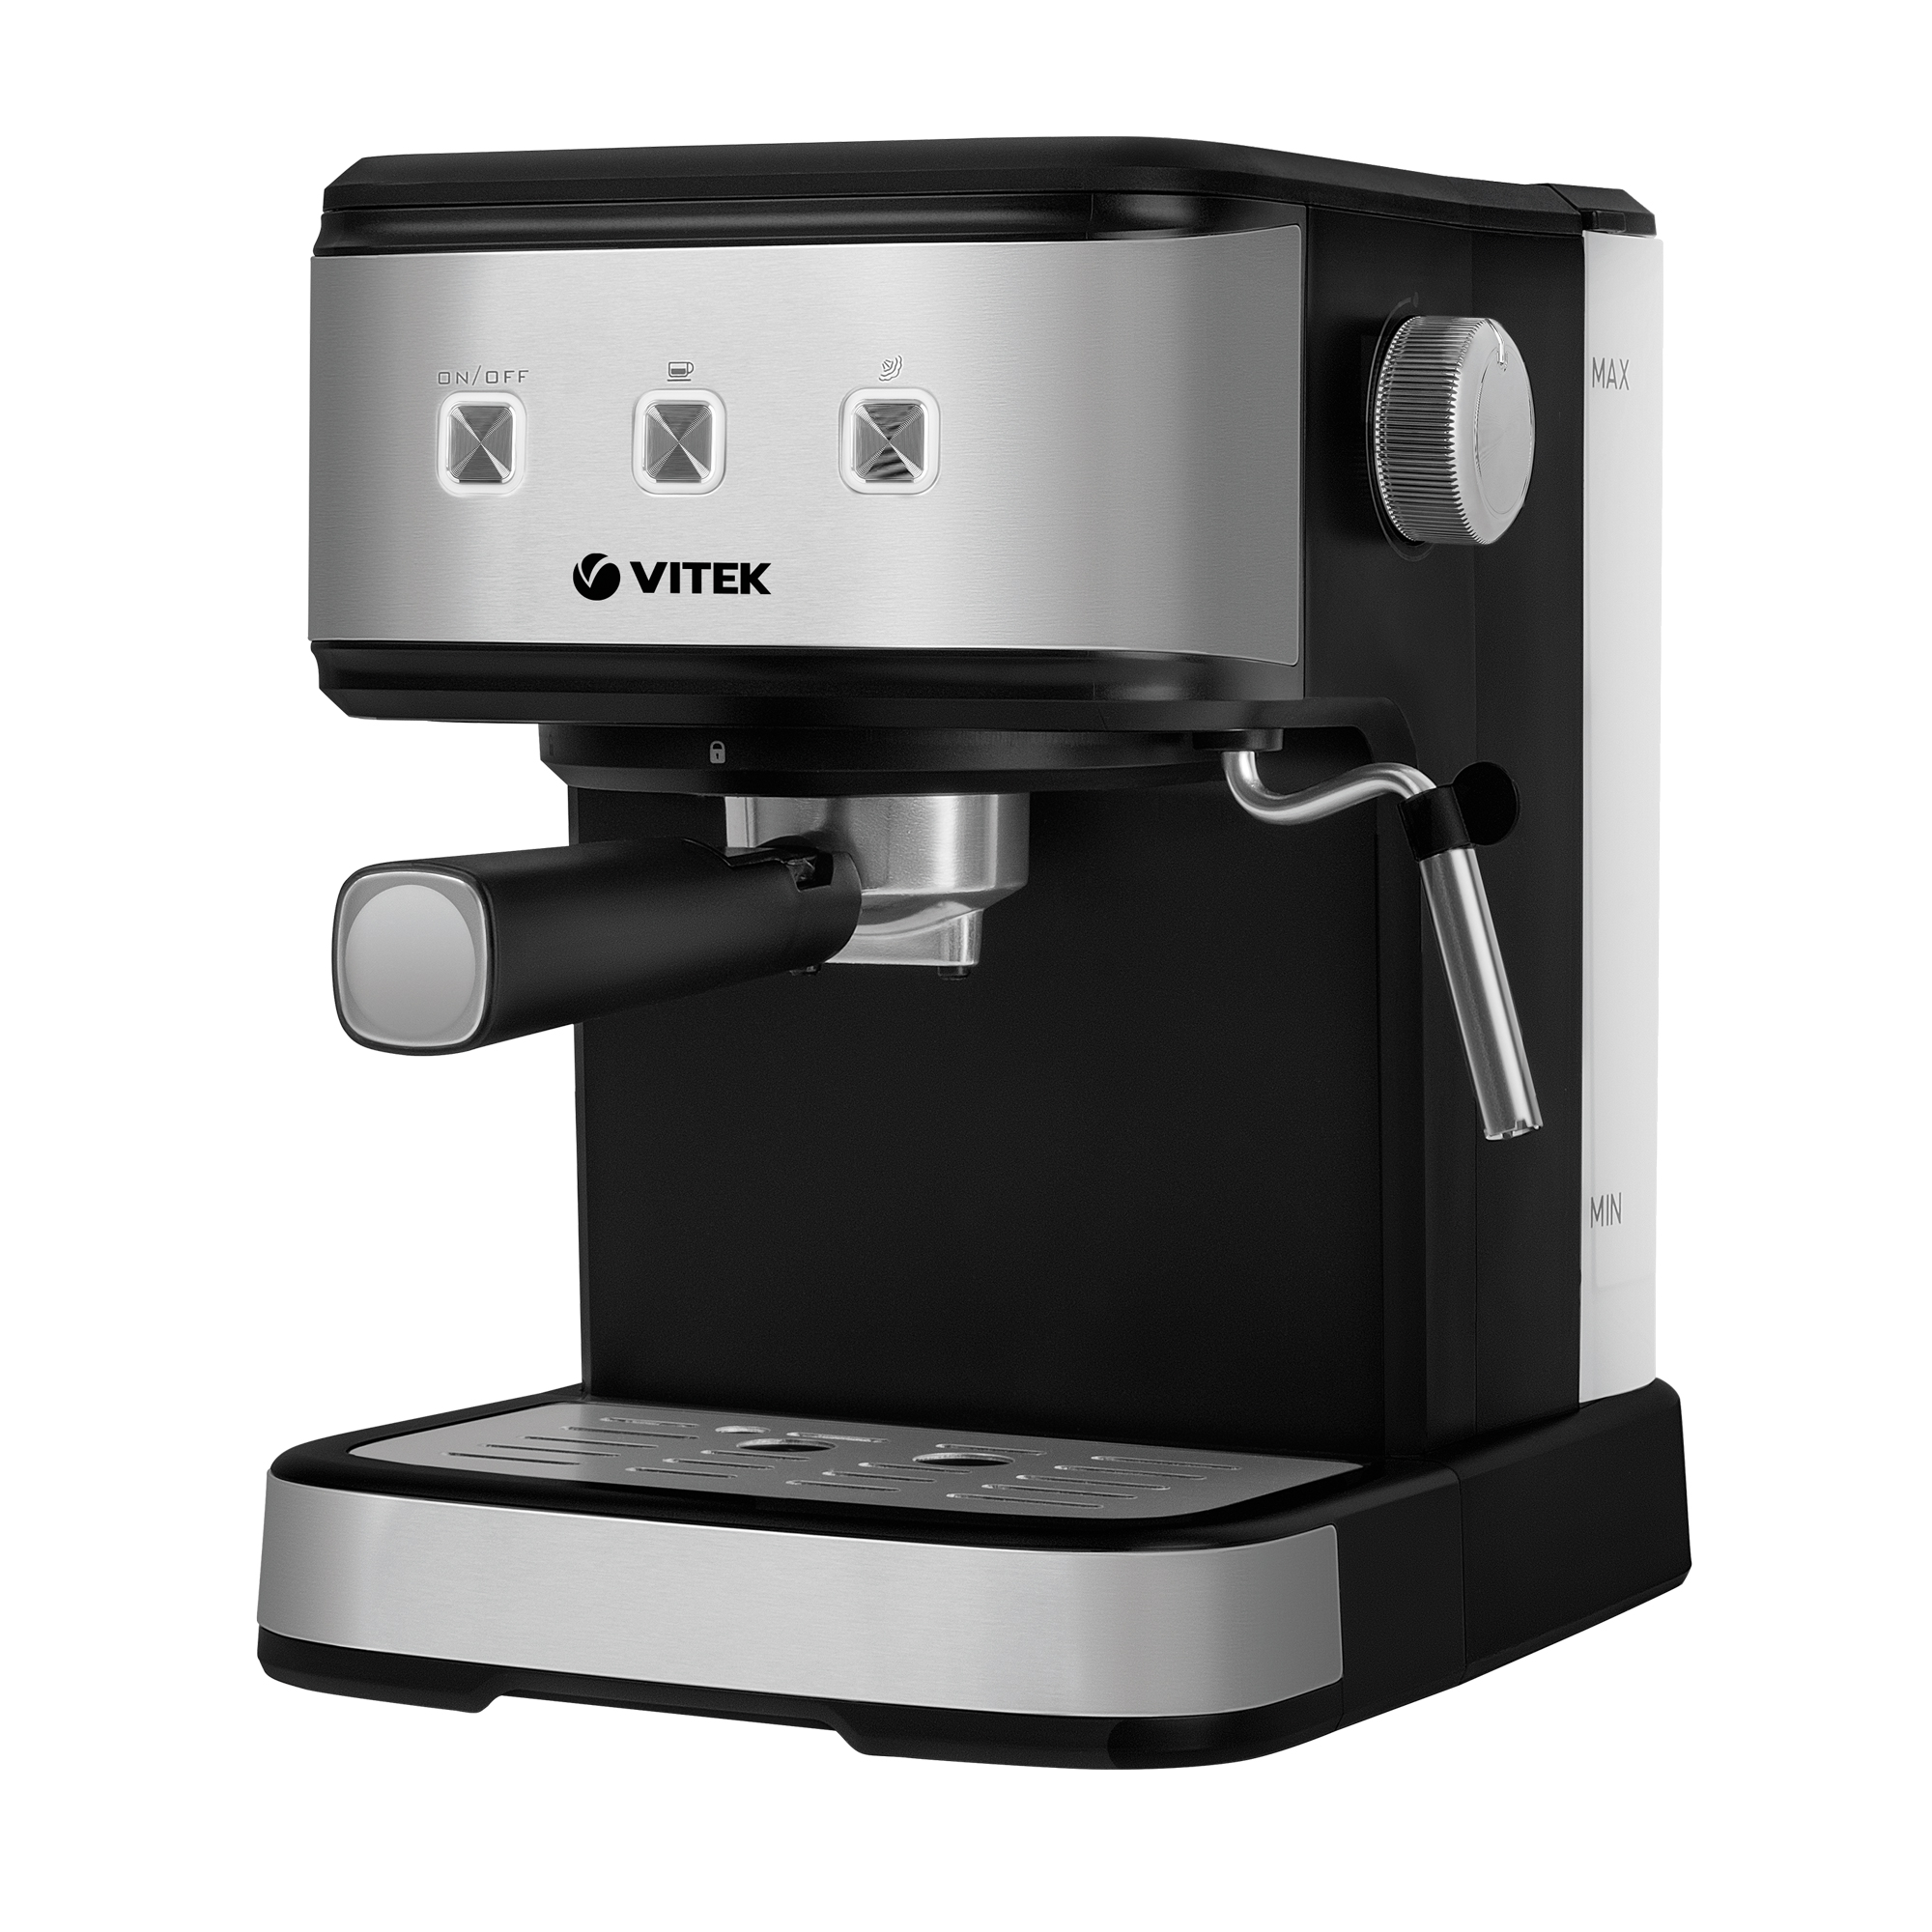 Рожковая кофеварка VITEK VT-8471 серый, черный рожковая кофеварка vitek vt 1524 серый